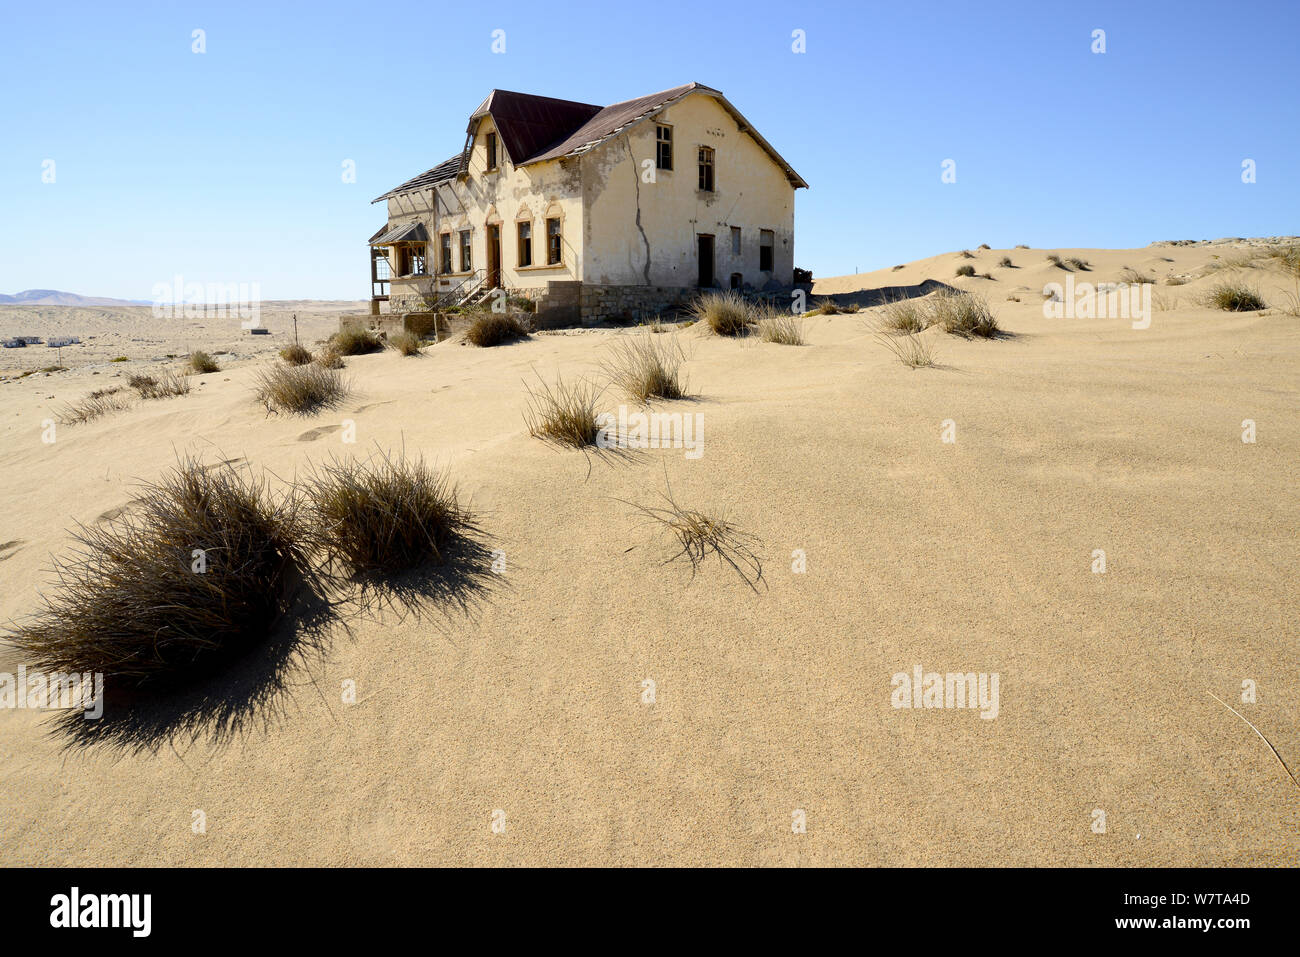 Casa abbandonata nelle dune di sabbia. Kolmanskop città fantasma, un vecchio diamond-città mineraria dove dune di sabbia in movimento hanno invaso le case abbandonate, Namib Desert Namibia, ottobre 2013. Foto Stock